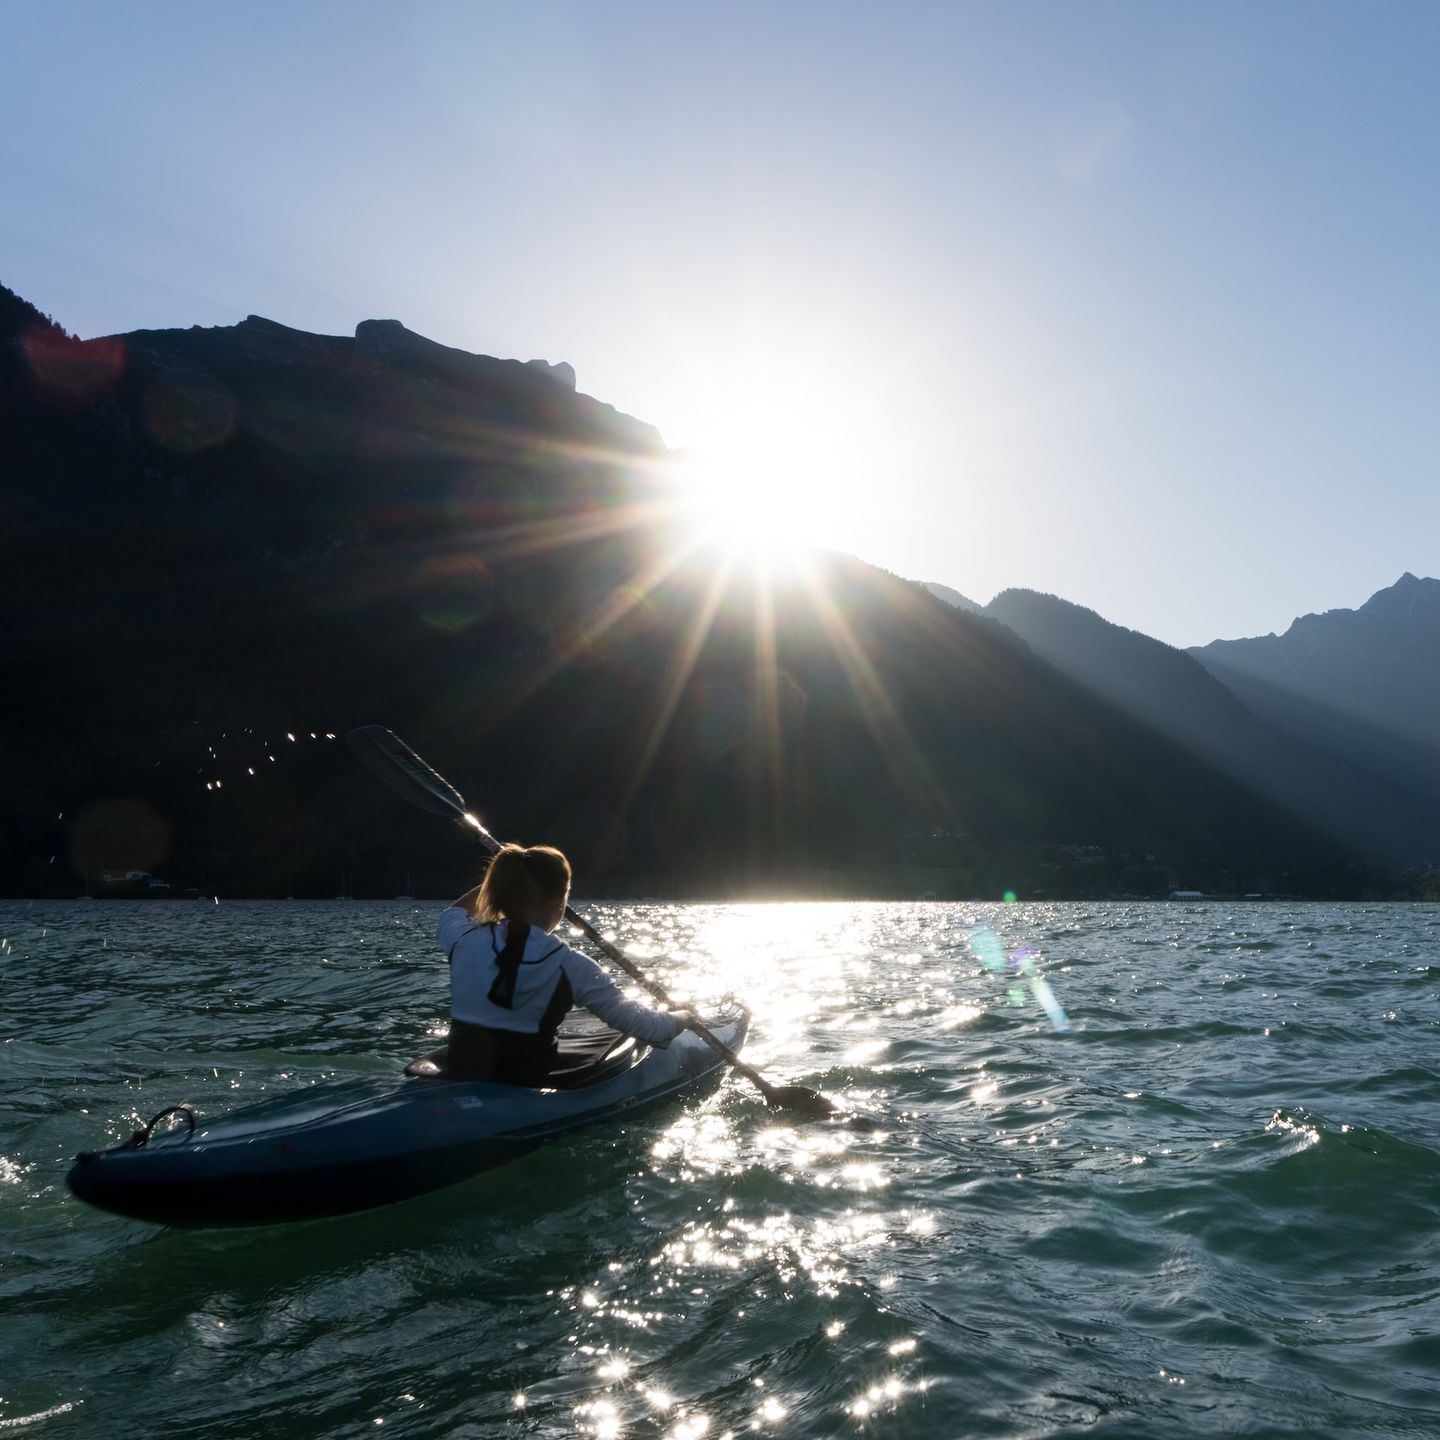 Adventure is out there, let’s paddle! 🛶

Tauche ein in die Ruhe des Wassers und die majestätische Kulisse der Alpen beim Kajakfahren am Achensee. Genieße die sanften Wellen unter blauem Himmel und entdecke versteckte Buchten entlang des Ufers. Ein unvergessliches Abenteuer für Naturliebhaber und Wassersportler.💙 

#achensee #kajakabenteuer #sommerurlaub #tipp #visittirol #kajak